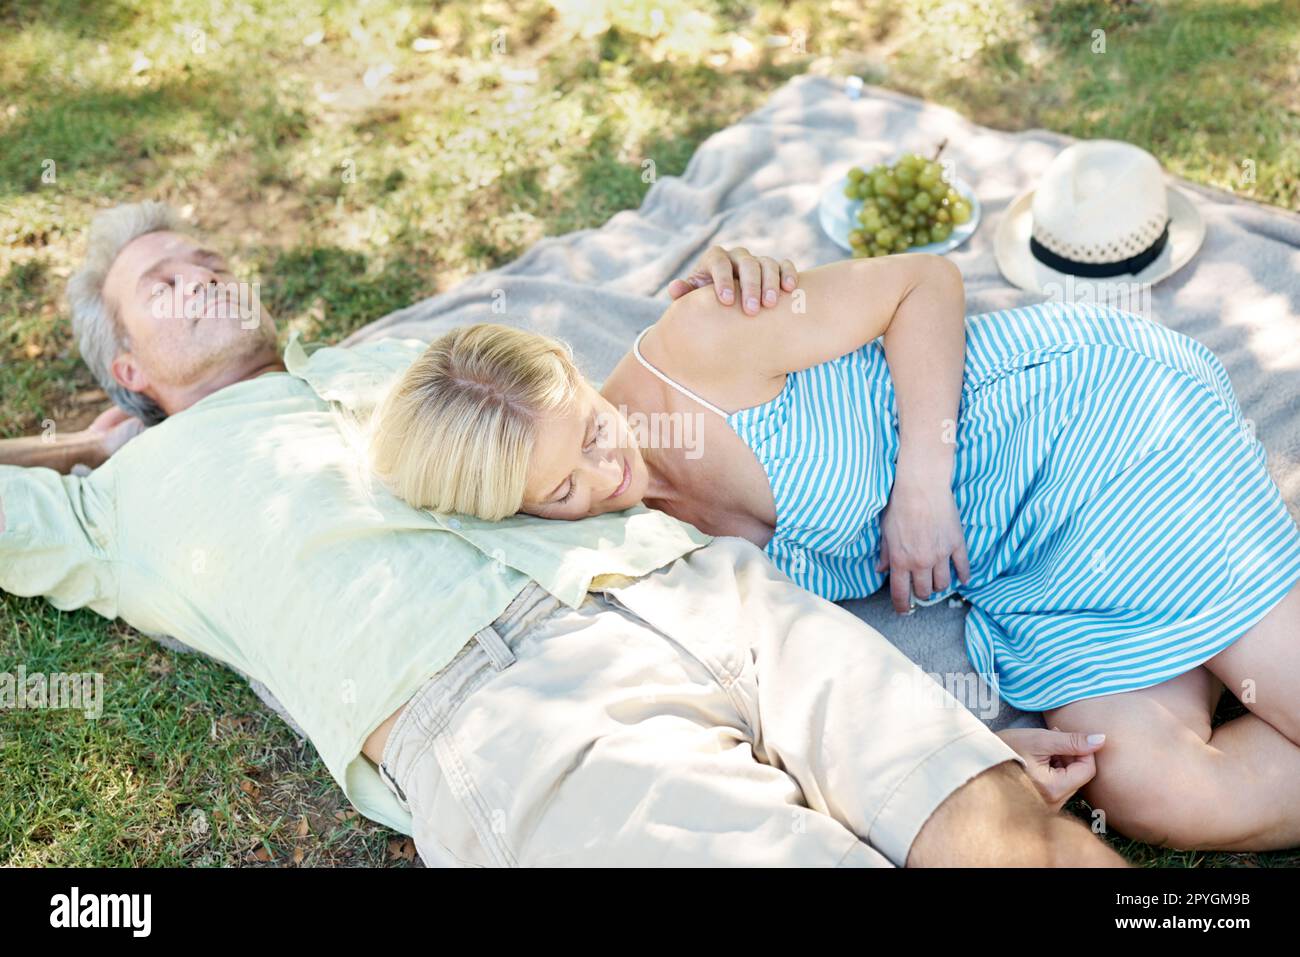 Lasciate che l'aria fresca sciolga il vostro stress... Un marito e una moglie rilassati su una coperta mentre si godono un piacevole picnic nel parco. Foto Stock